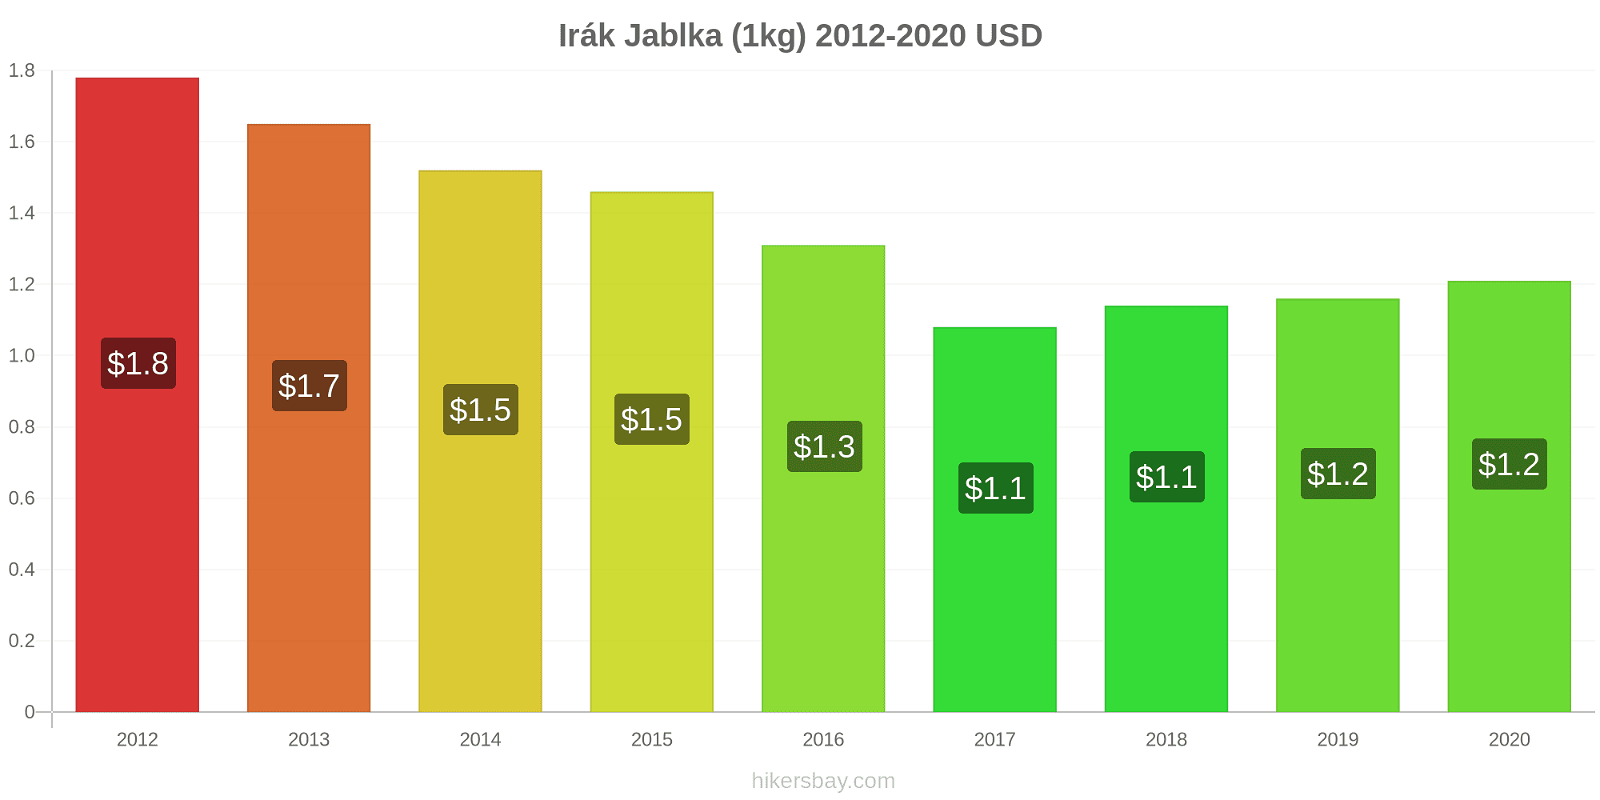 Irák změny cen Jablka (1kg) hikersbay.com